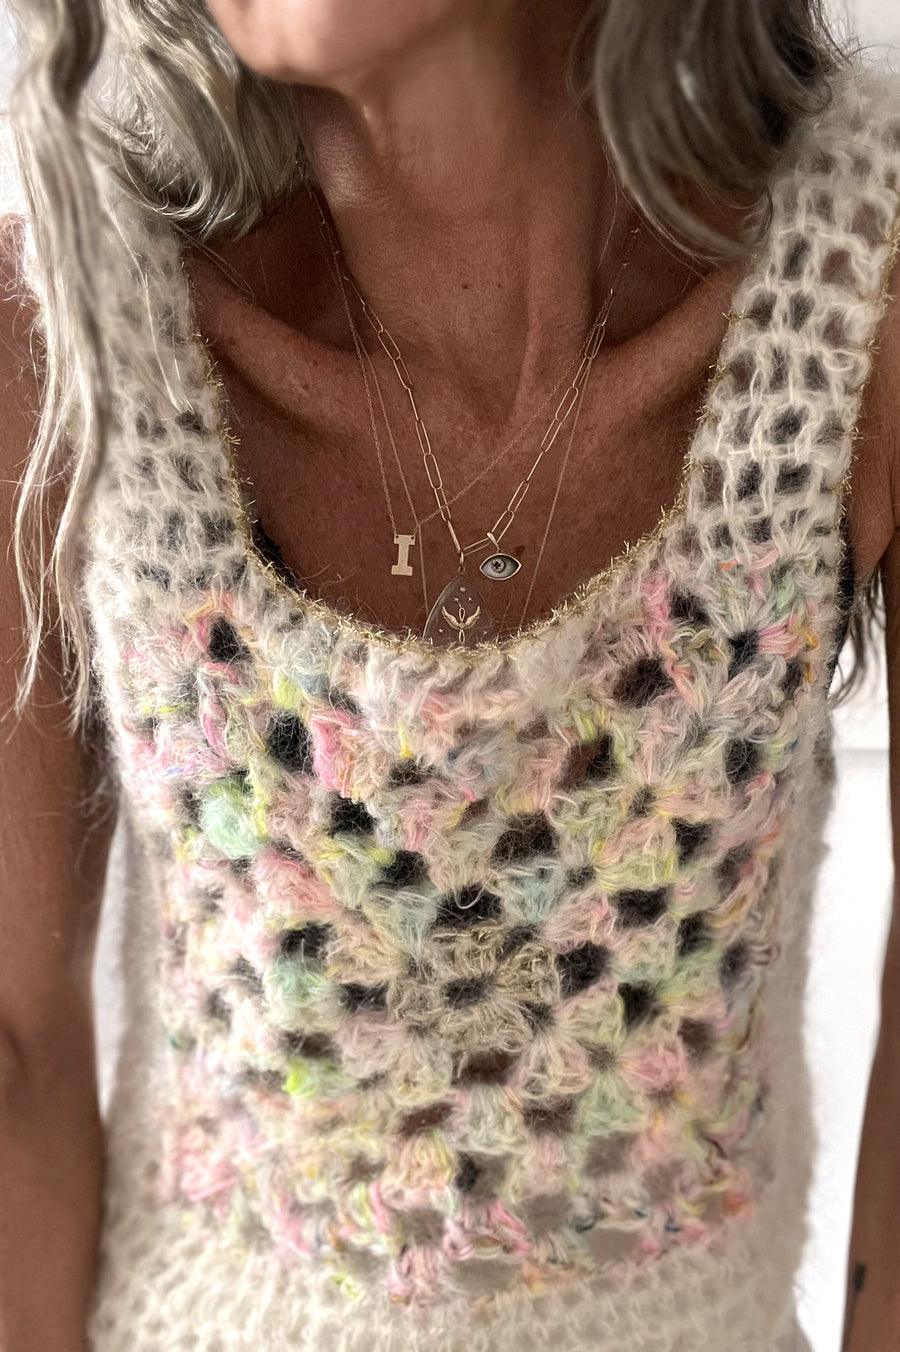 ïLD Granny Square Crochet Top - Unicorn